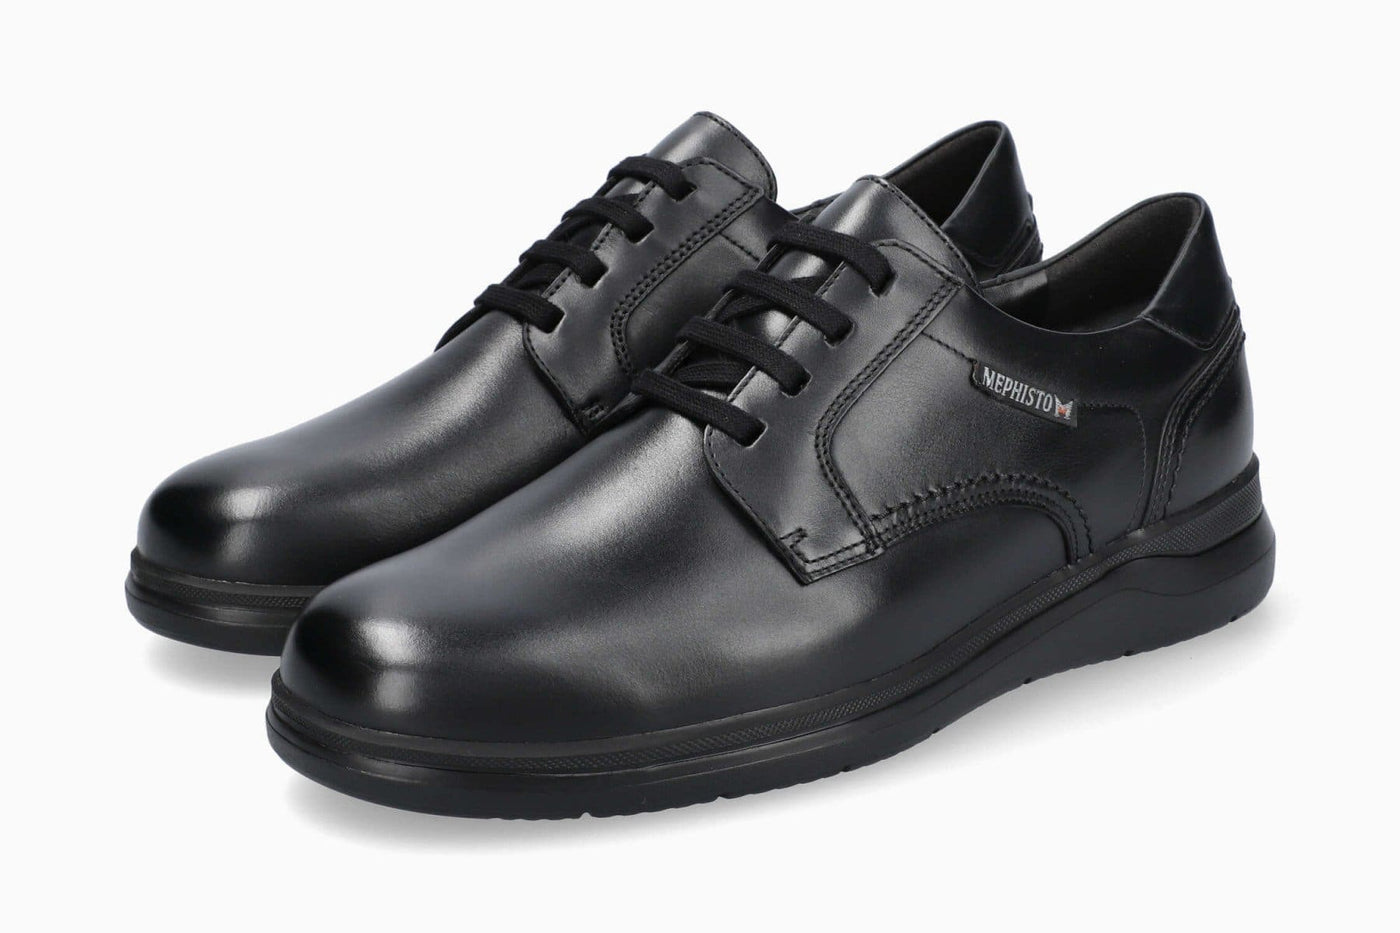 Mephisto Almeric | Chaussures confortables - Noir / 5.5 - Chaussures à lacets homme